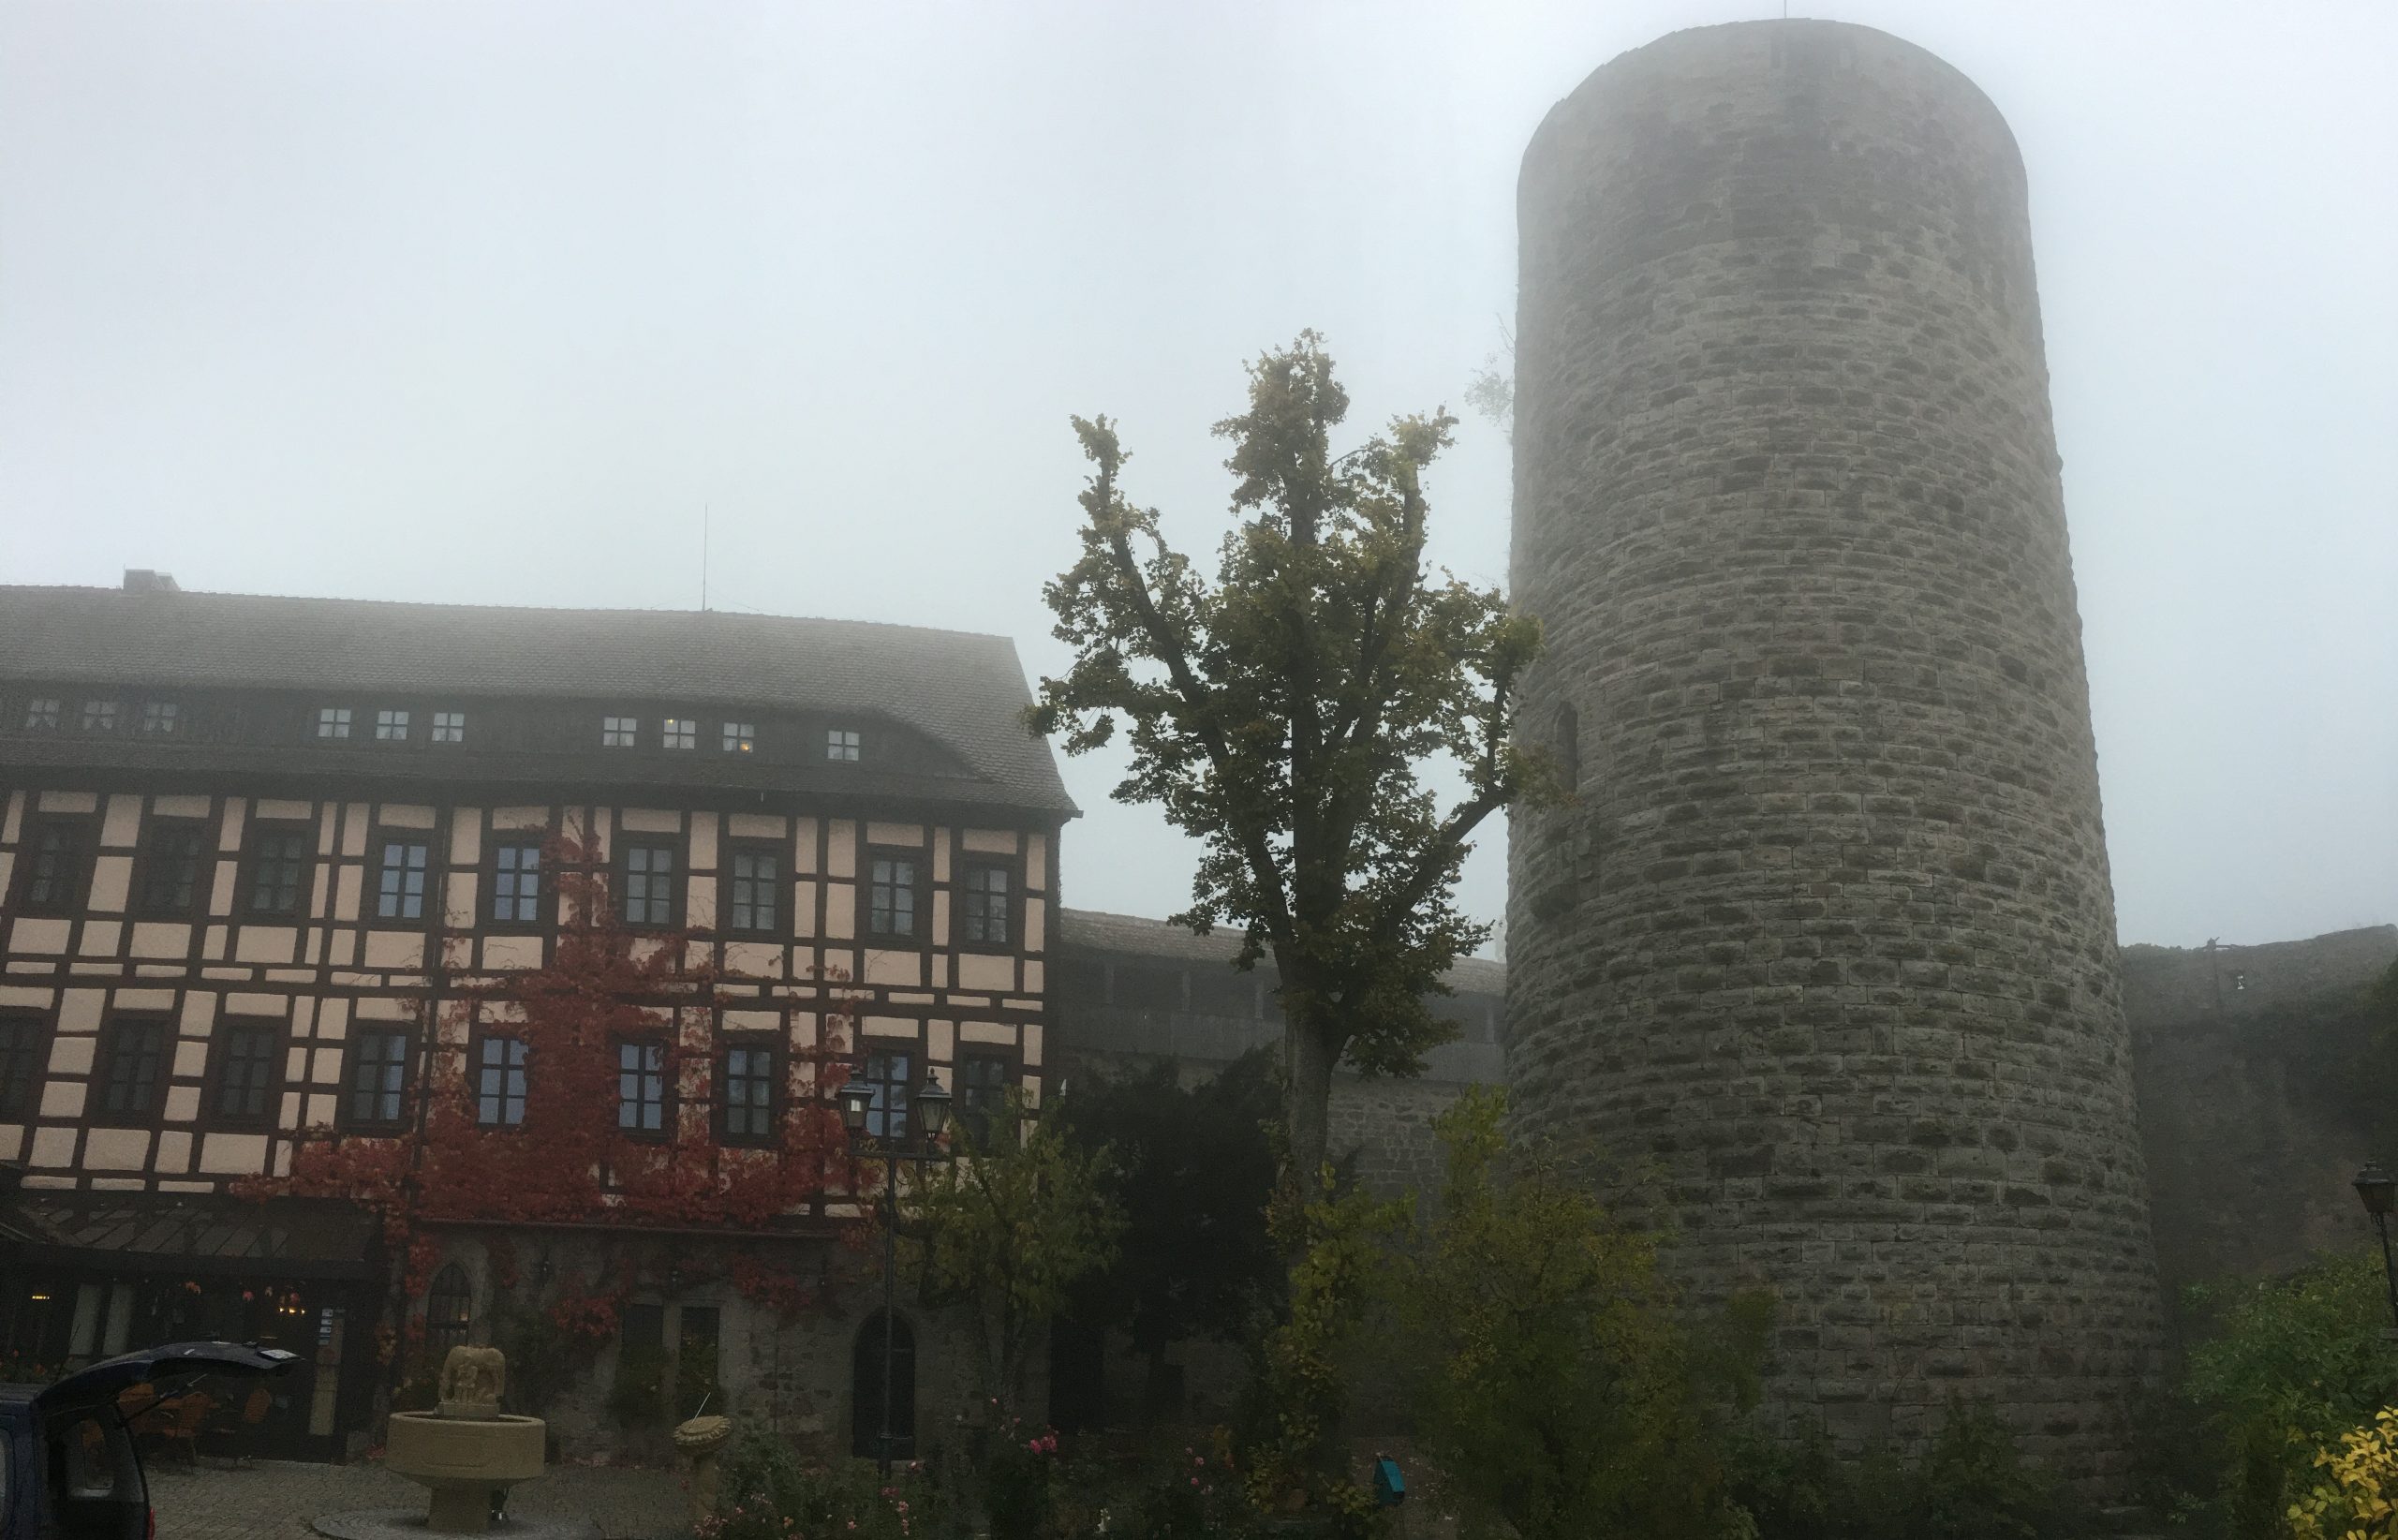 Burg Colmberg in the fog